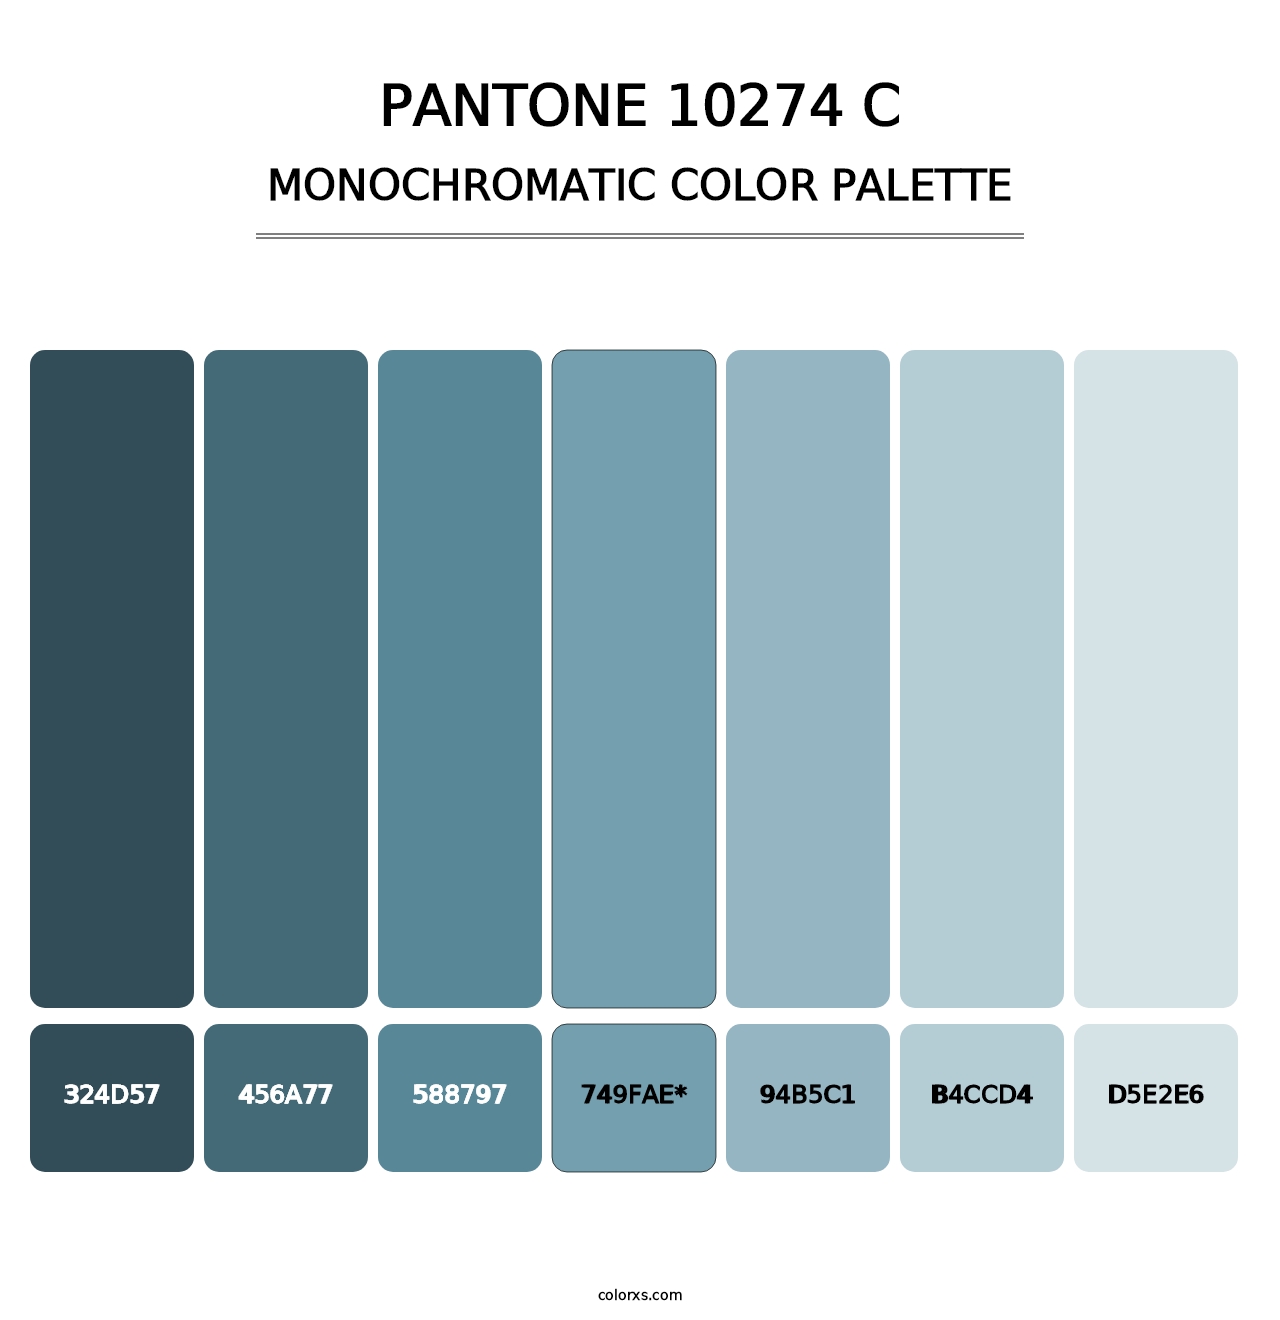 PANTONE 10274 C - Monochromatic Color Palette